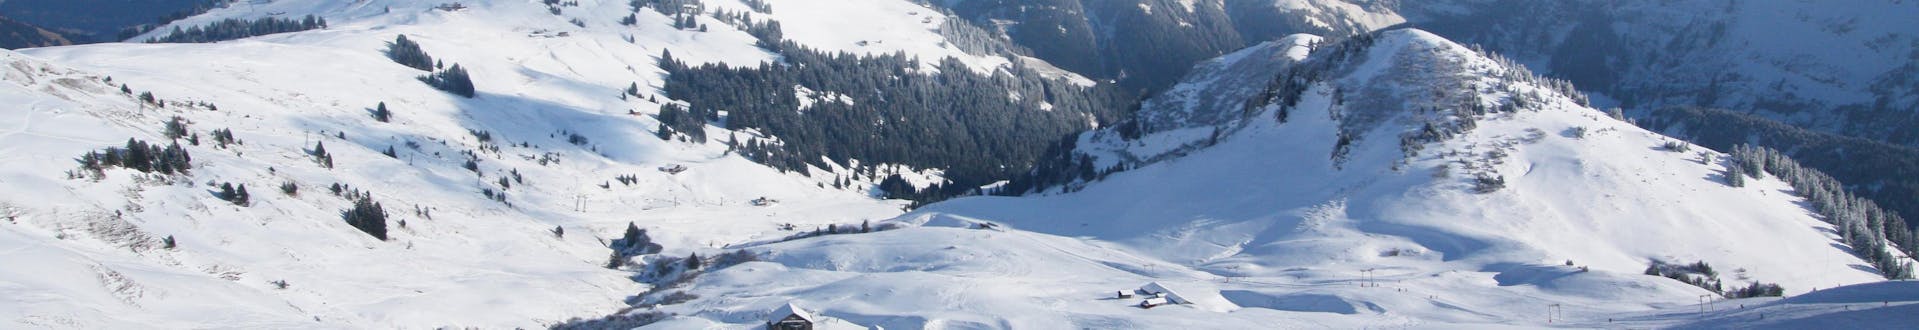 Blick auf die schneebedeckten Pisten des schweizerischen Skigebiets Les Crosets wo örtliche Skischulen eine breite Palette an Skikursen für all diejenigen, die das Skifahren lernen wollen, anbieten.